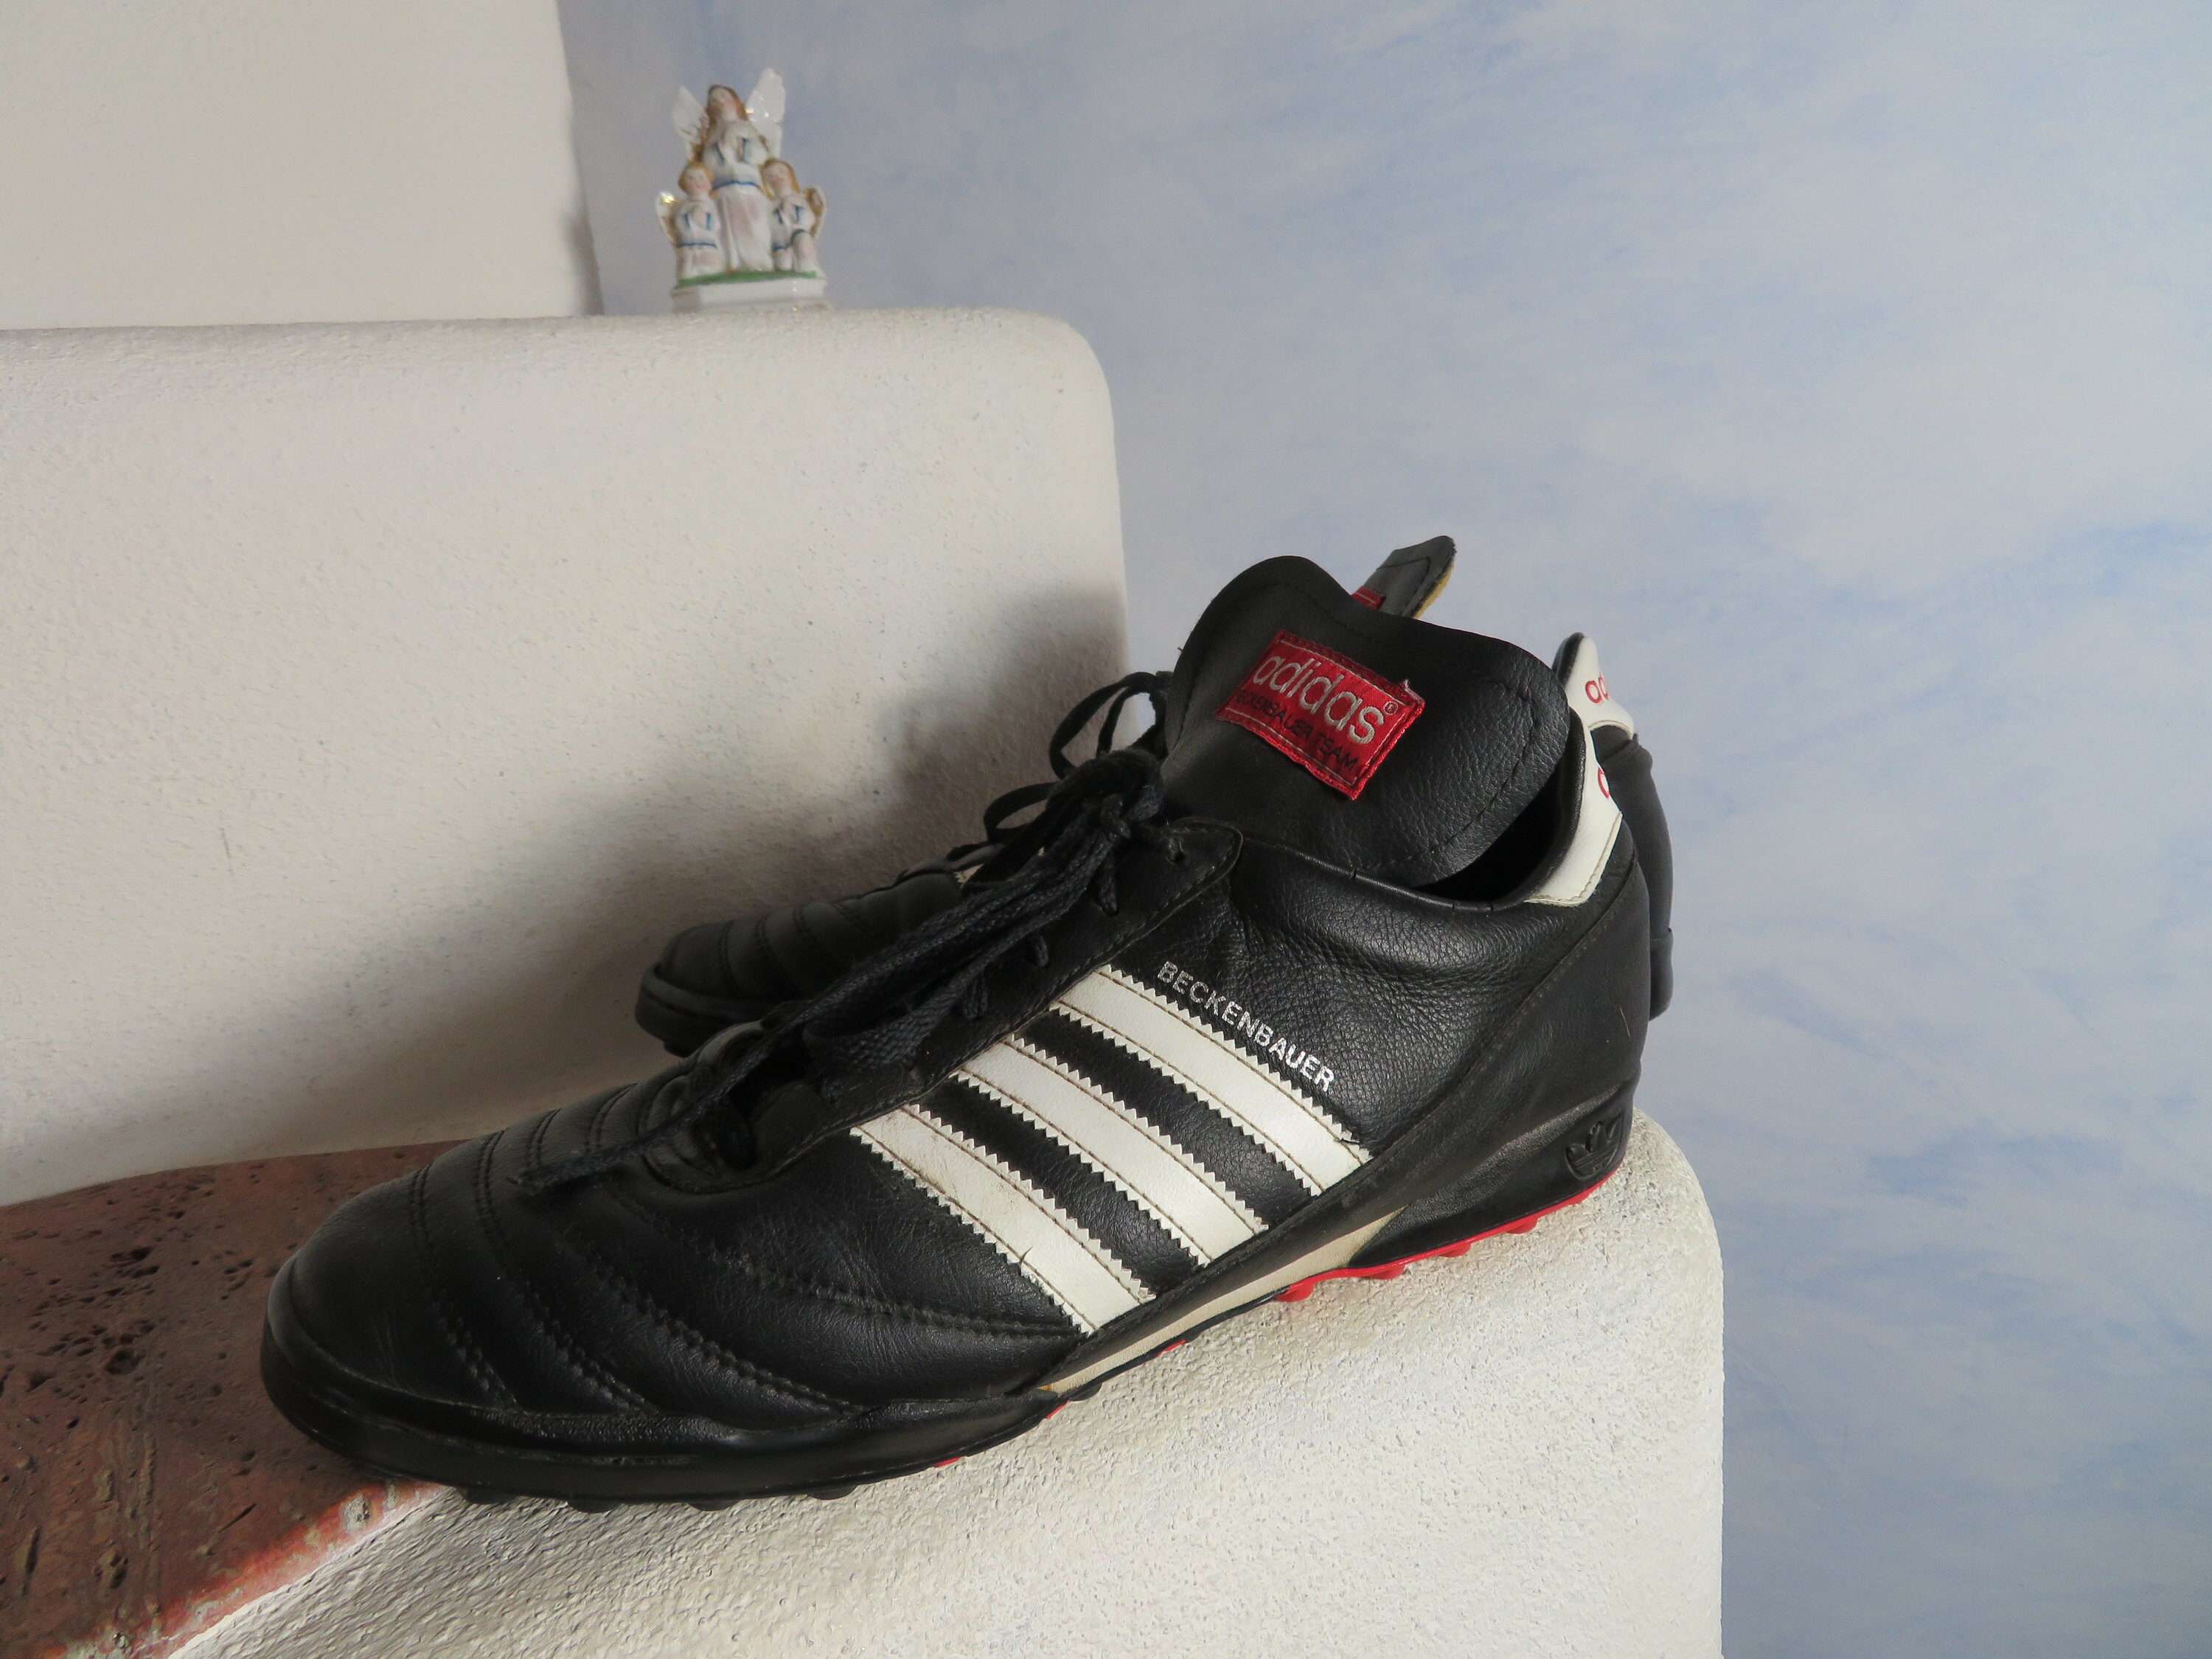 Authenticatie vliegtuigen Onderdompeling Vintage Adidas 1974s World Champion Beckenbauer Soccer Shoes - Etsy